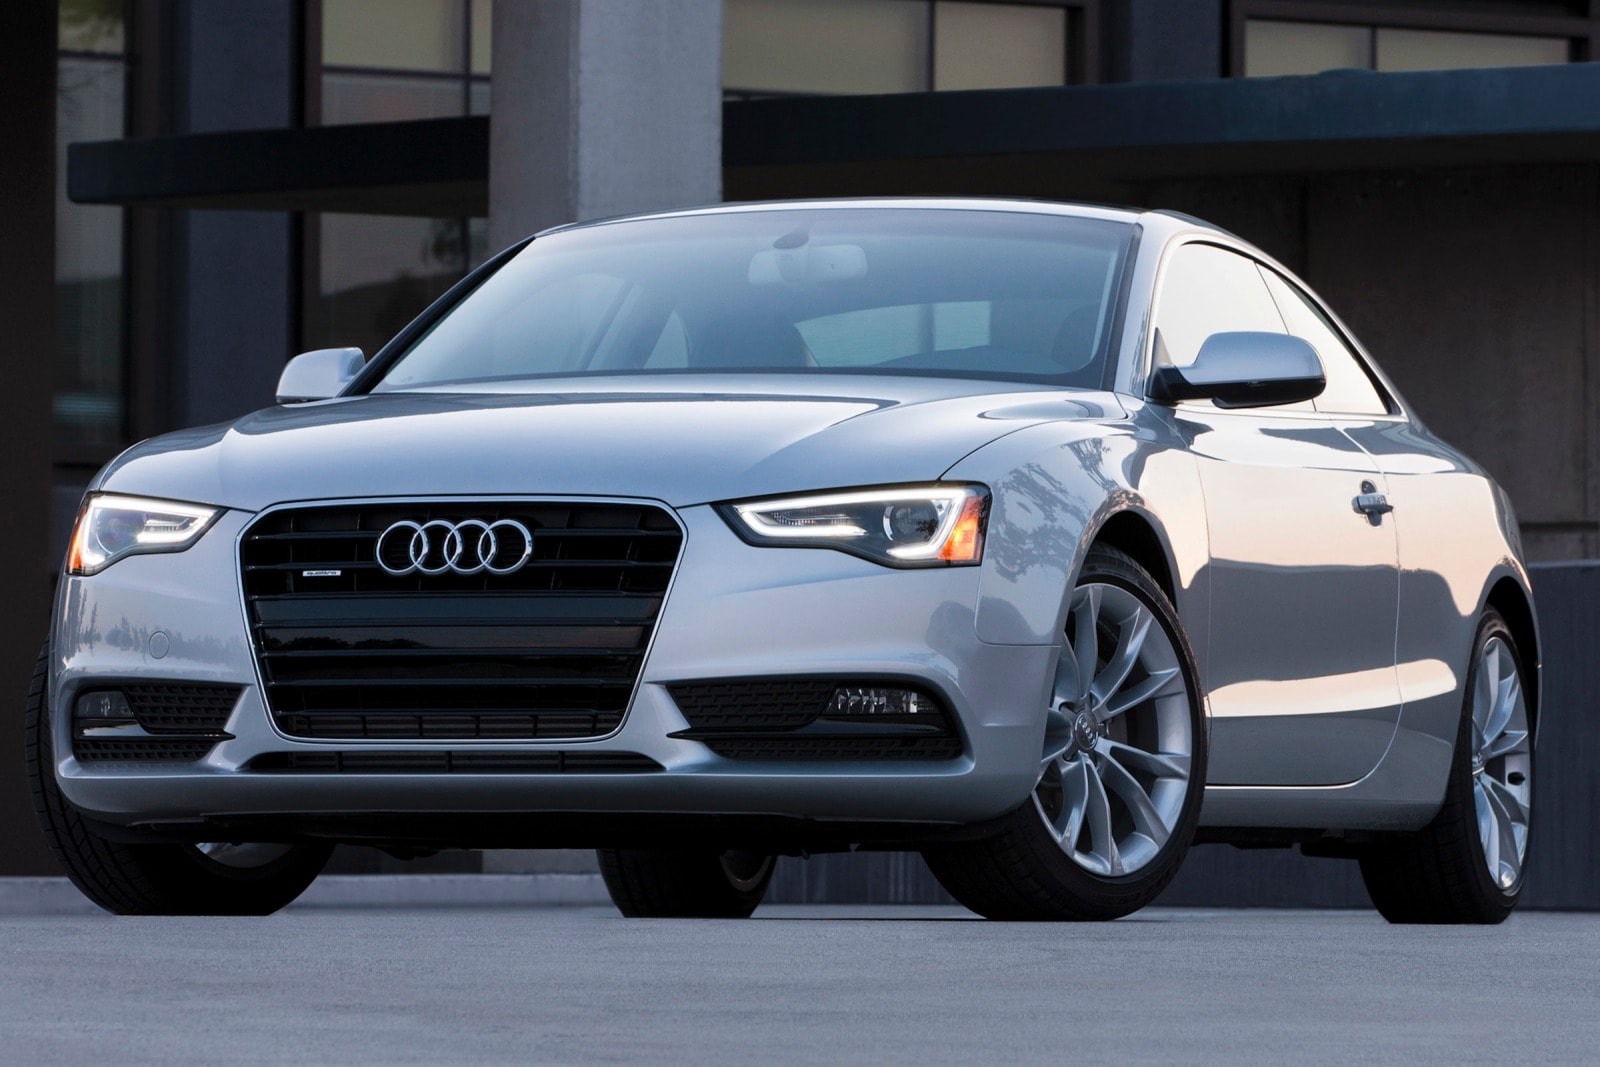 2015 Audi A5 Review & Ratings | Edmunds